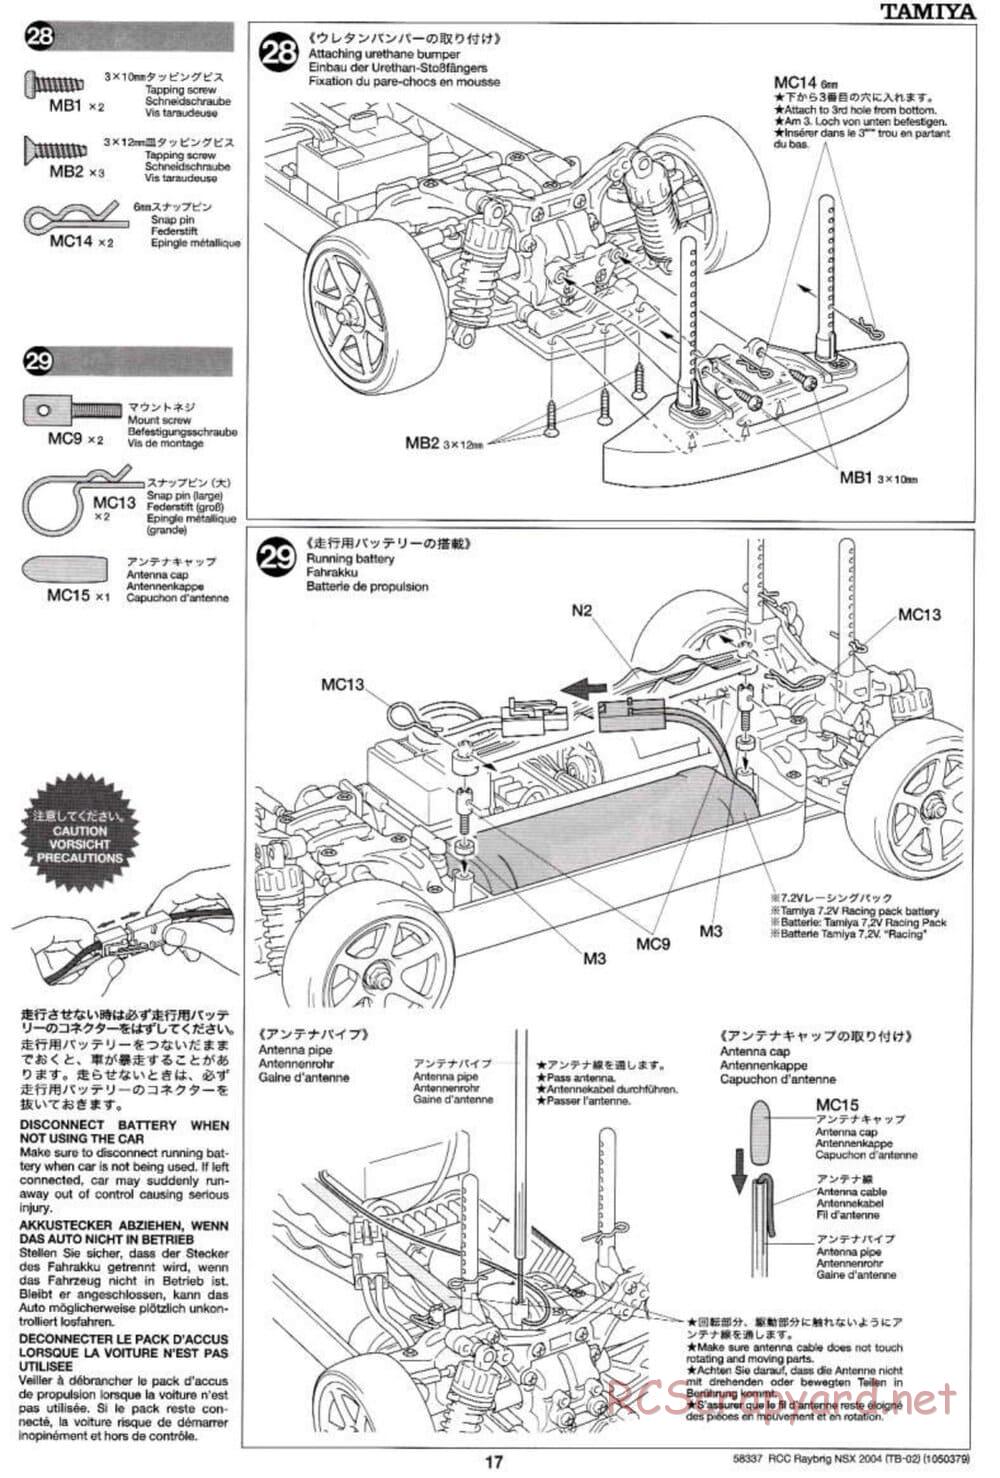 Tamiya - Raybrig NSX 2004 - TB-02 Chassis - Manual - Page 17